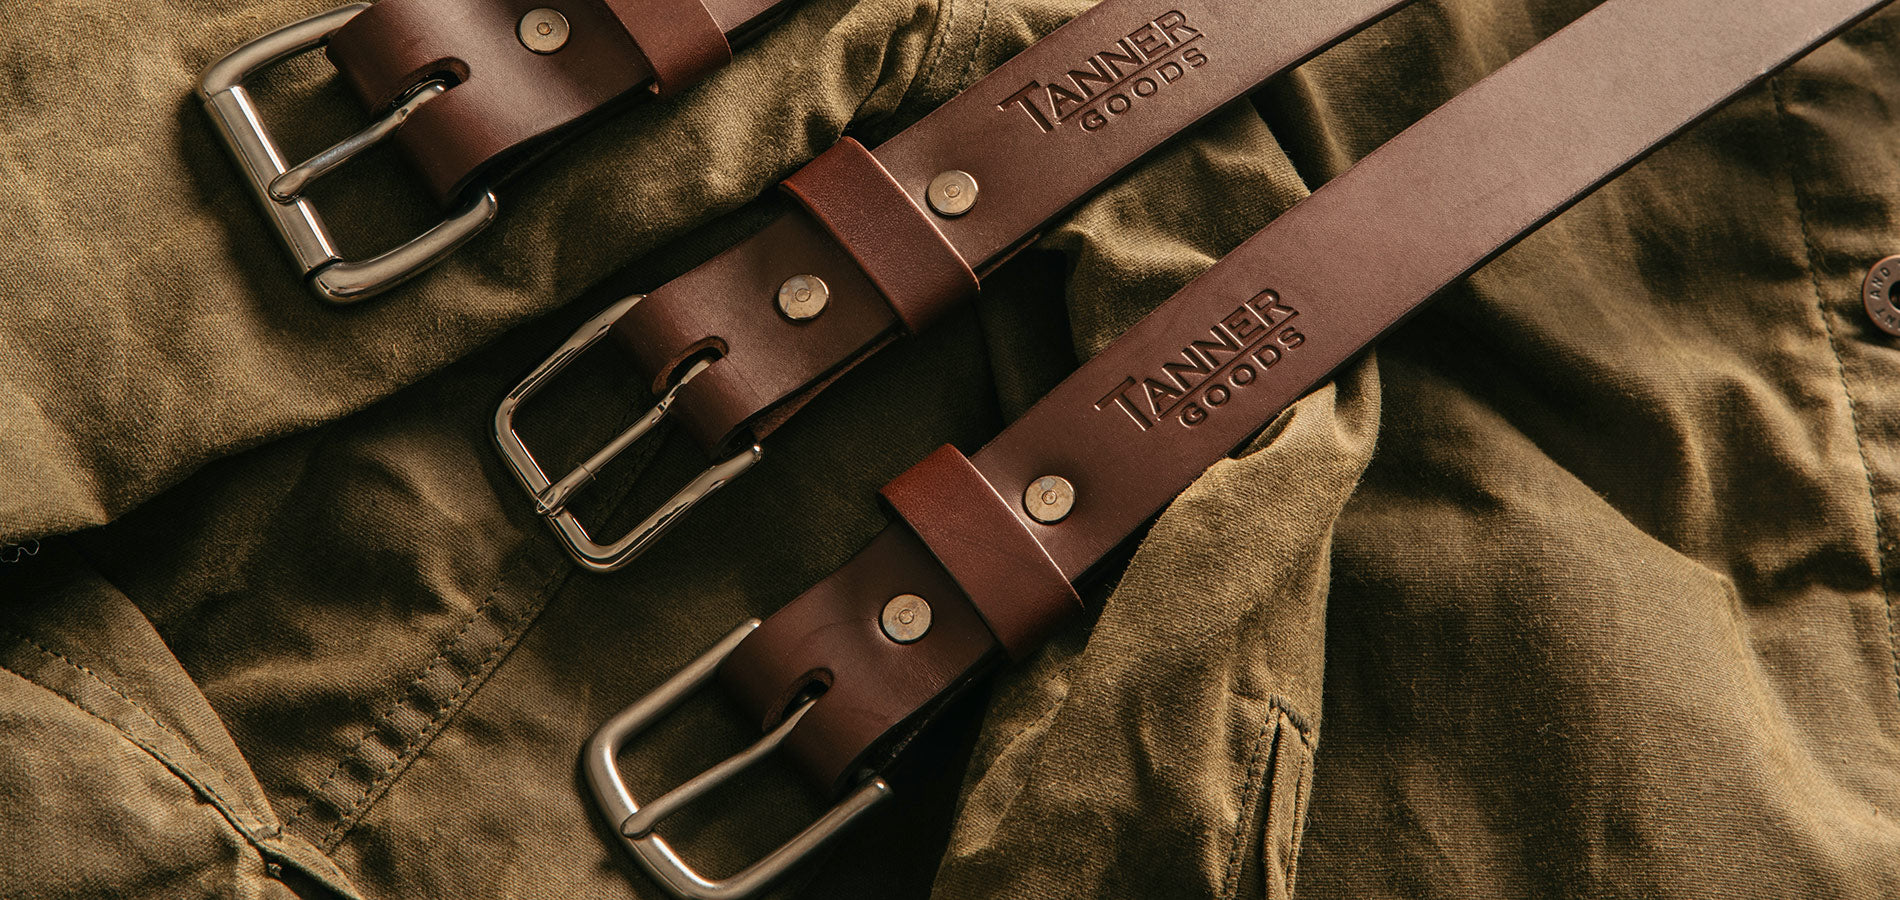 BG Classic Belt – Tanner Goods